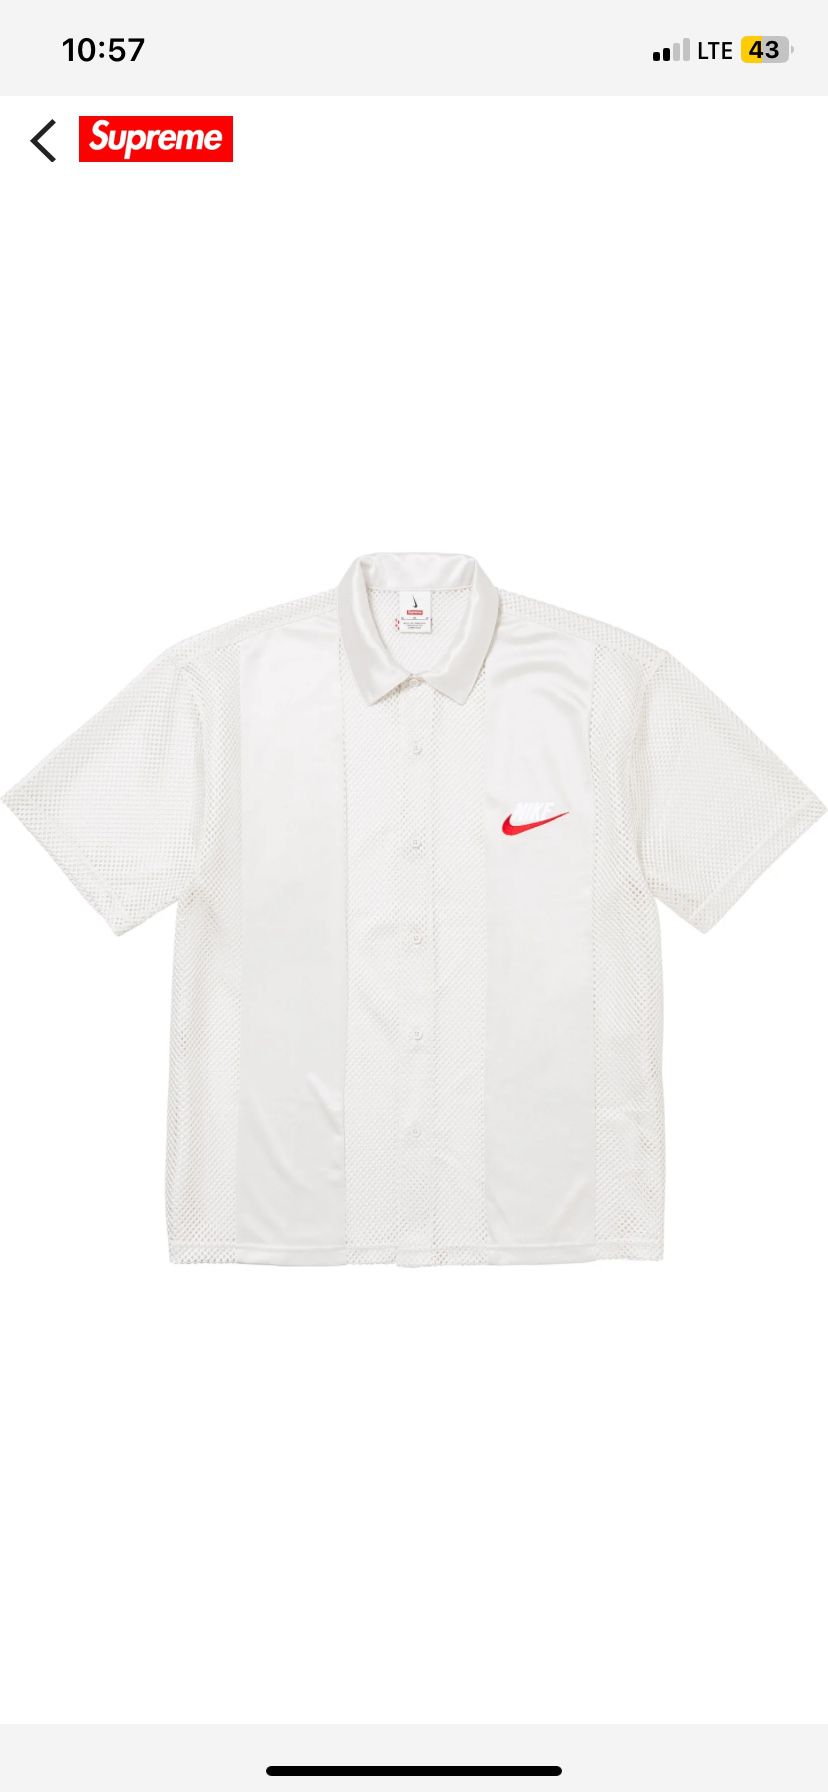 Supreme Nike Shirt